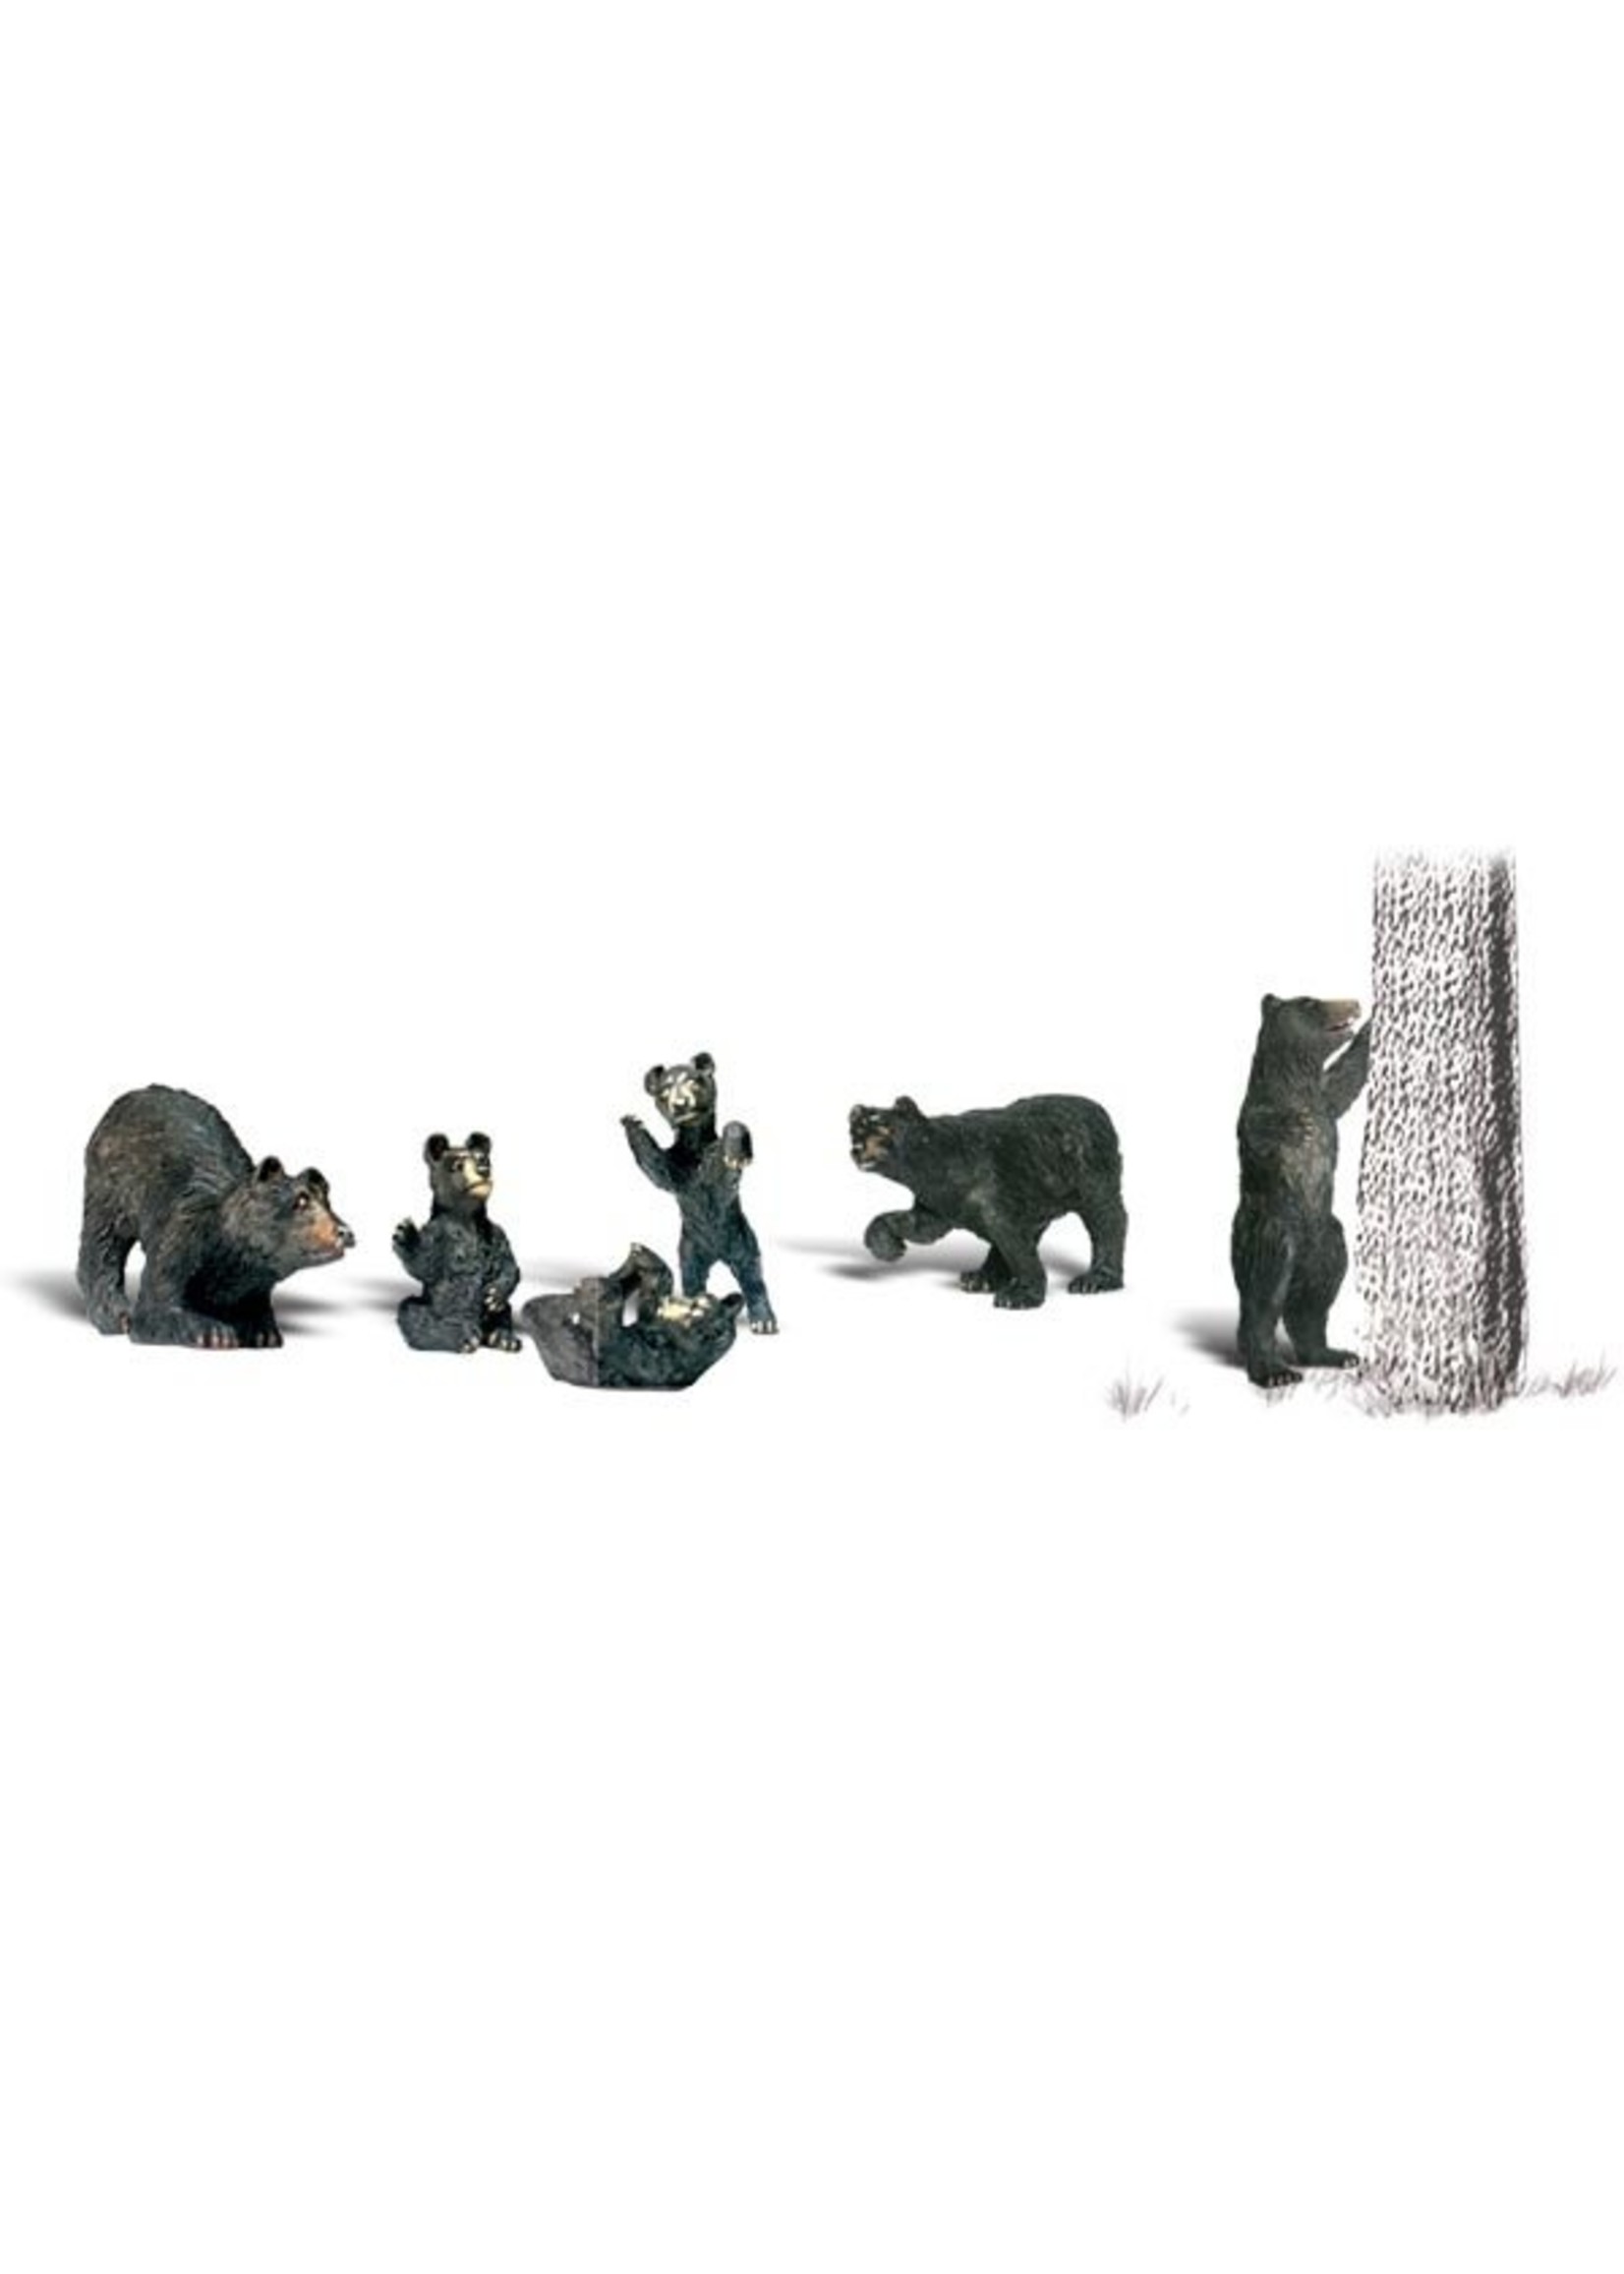 Woodland Scenics A2186 - N Scale Black Bears